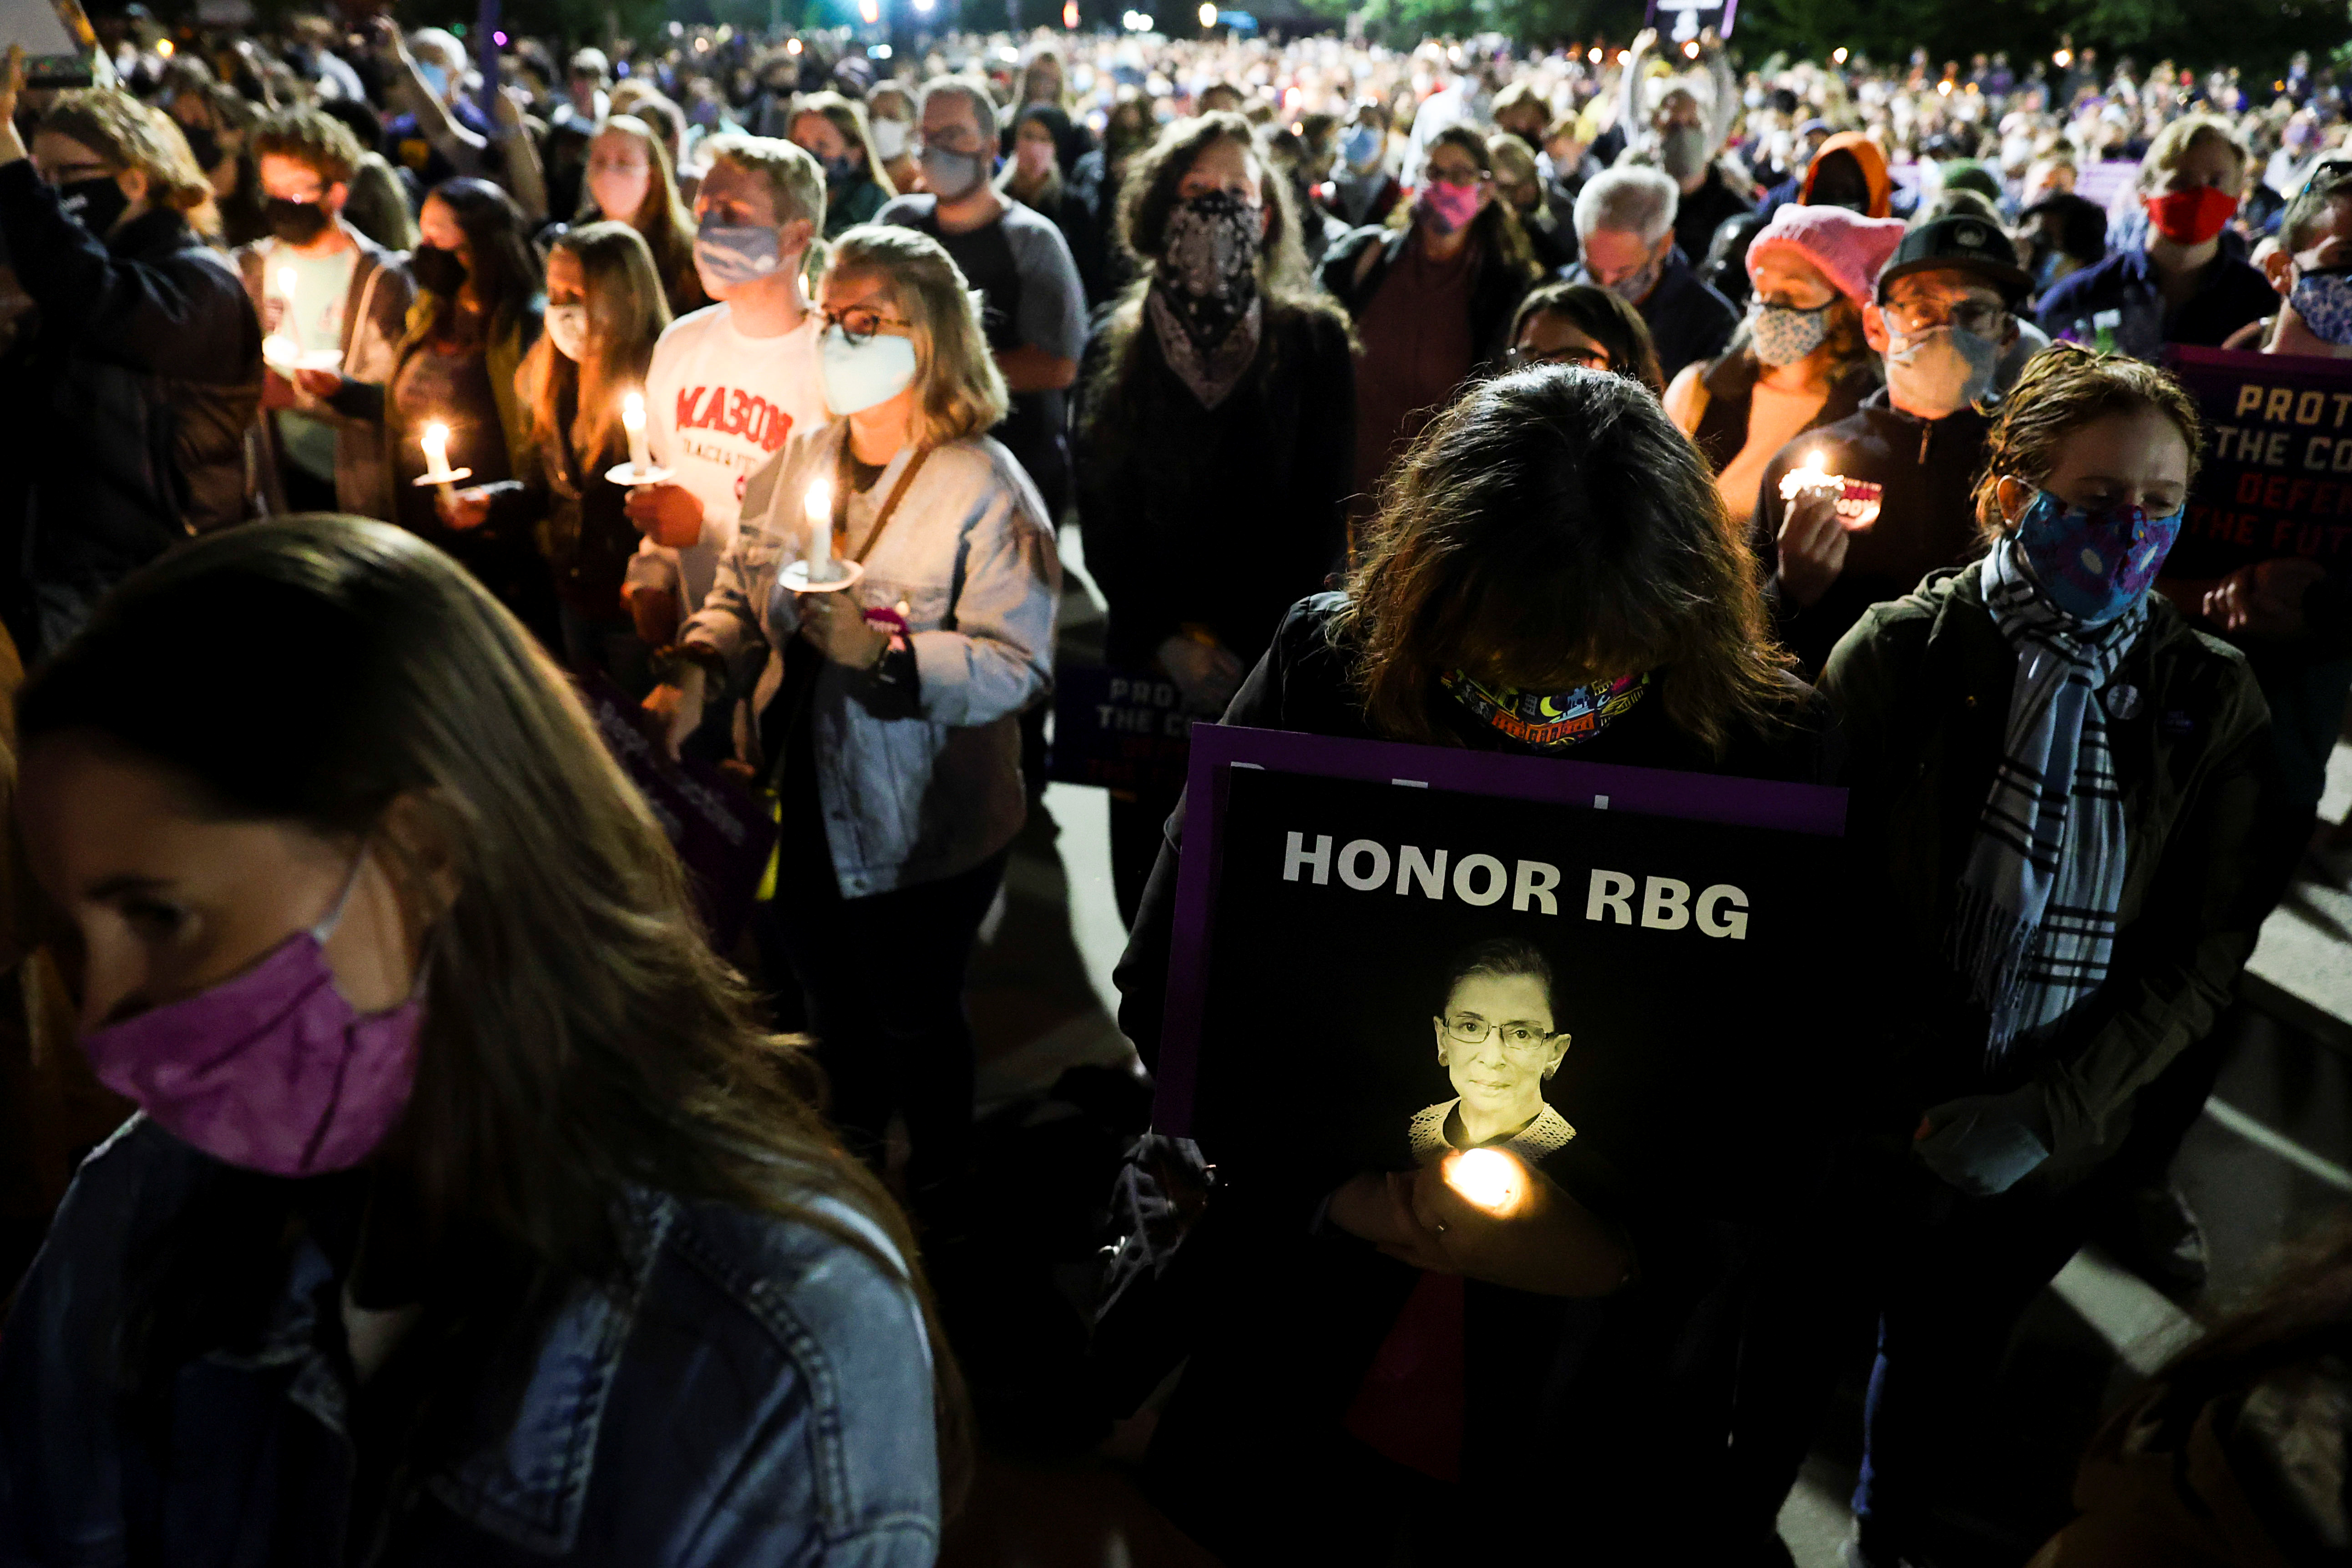 El homenaje a Ruth Bader Ginsburg en Washington (REUTERS)